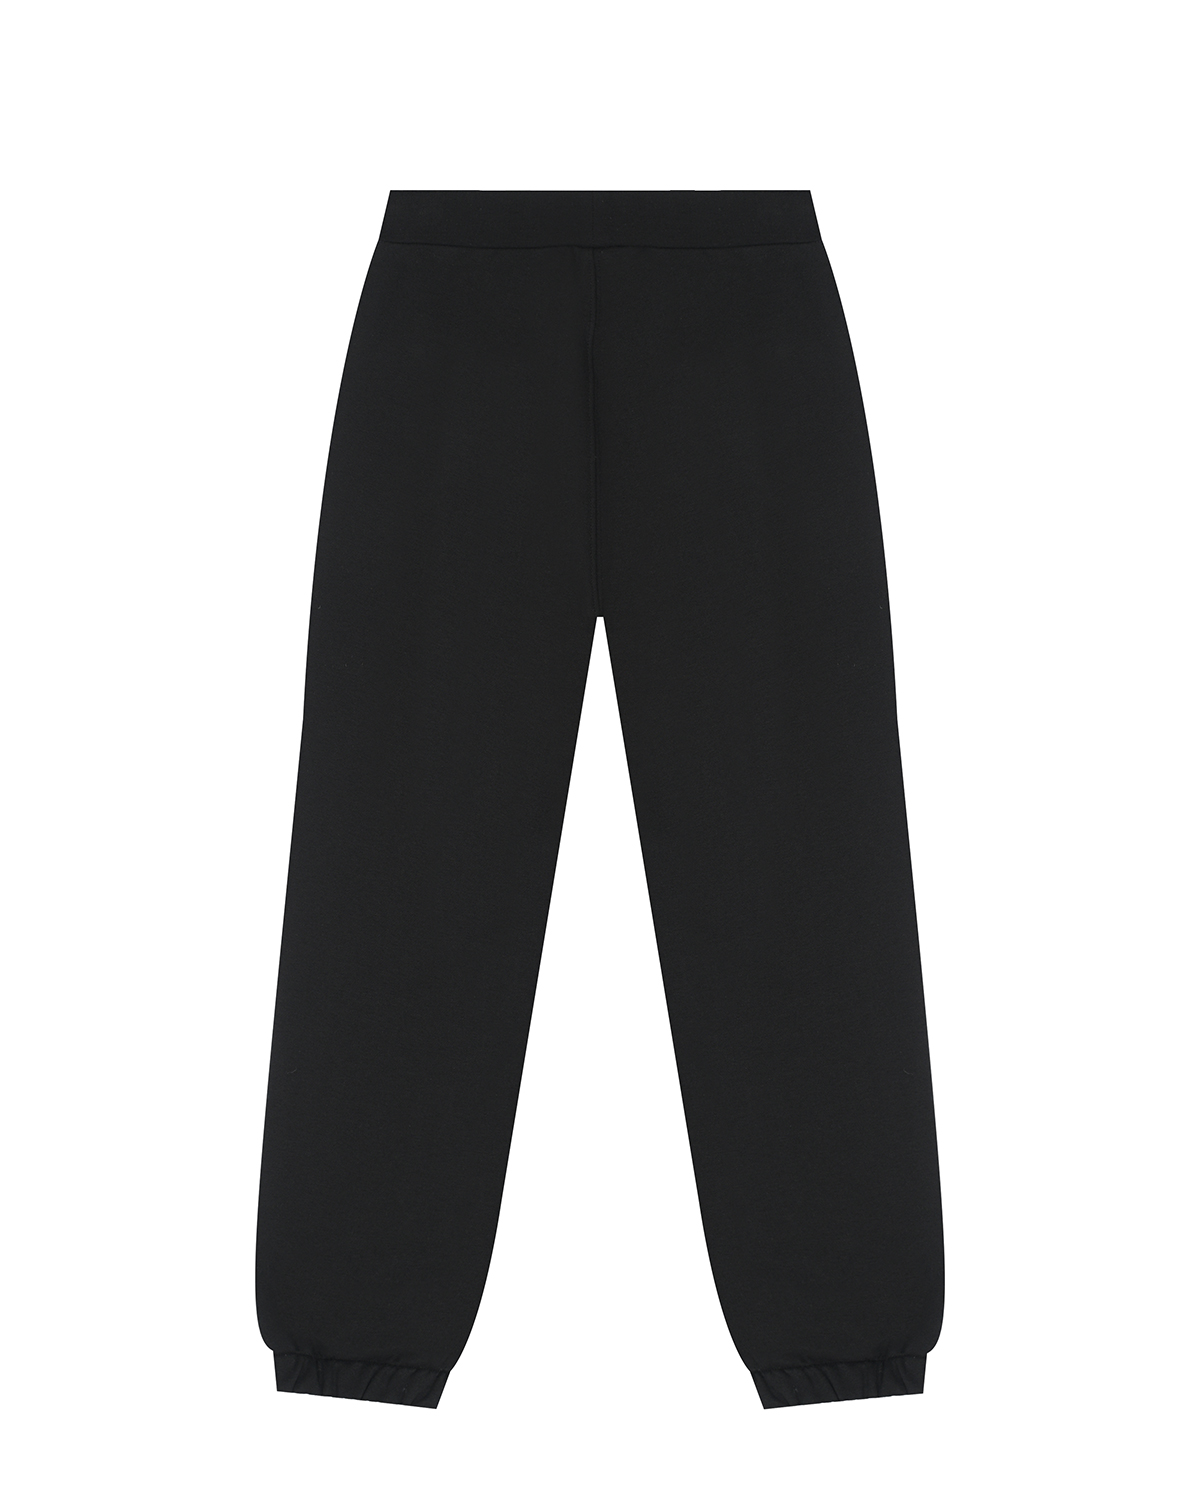 Спортивные черные брюки с вышивкой "Роза" Monnalisa детские, размер 128, цвет черный - фото 2